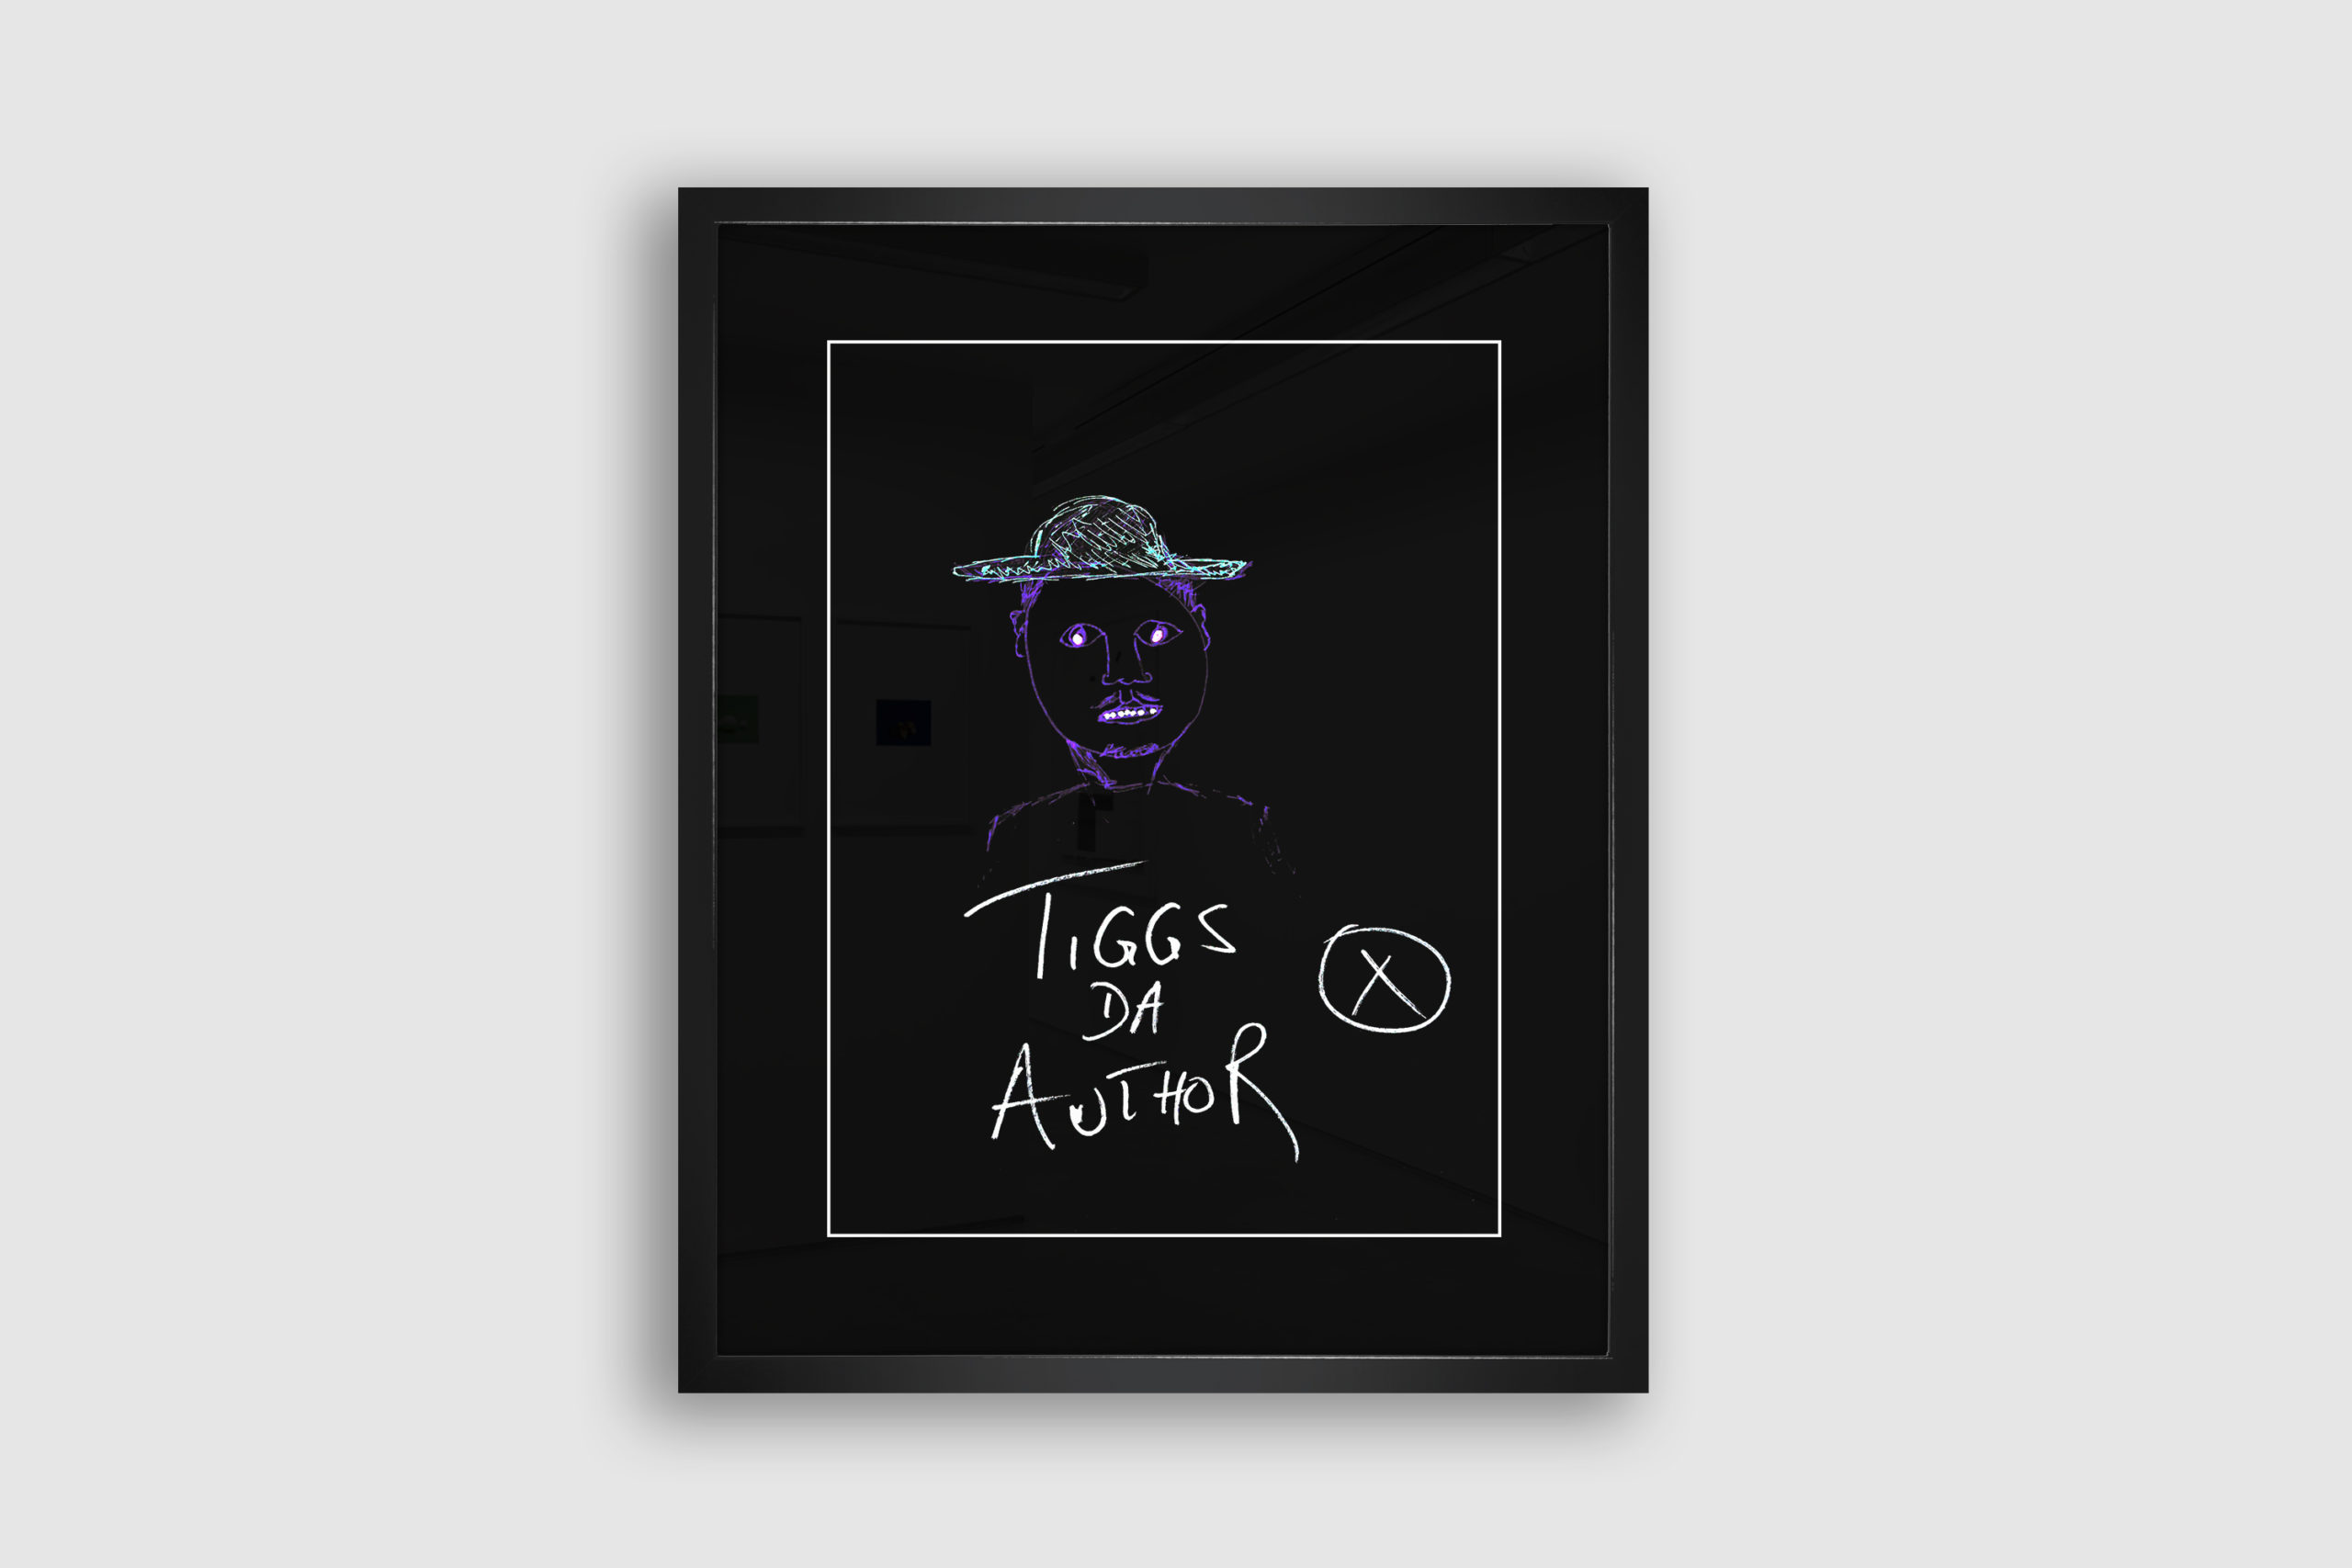 Tiggs Da Author